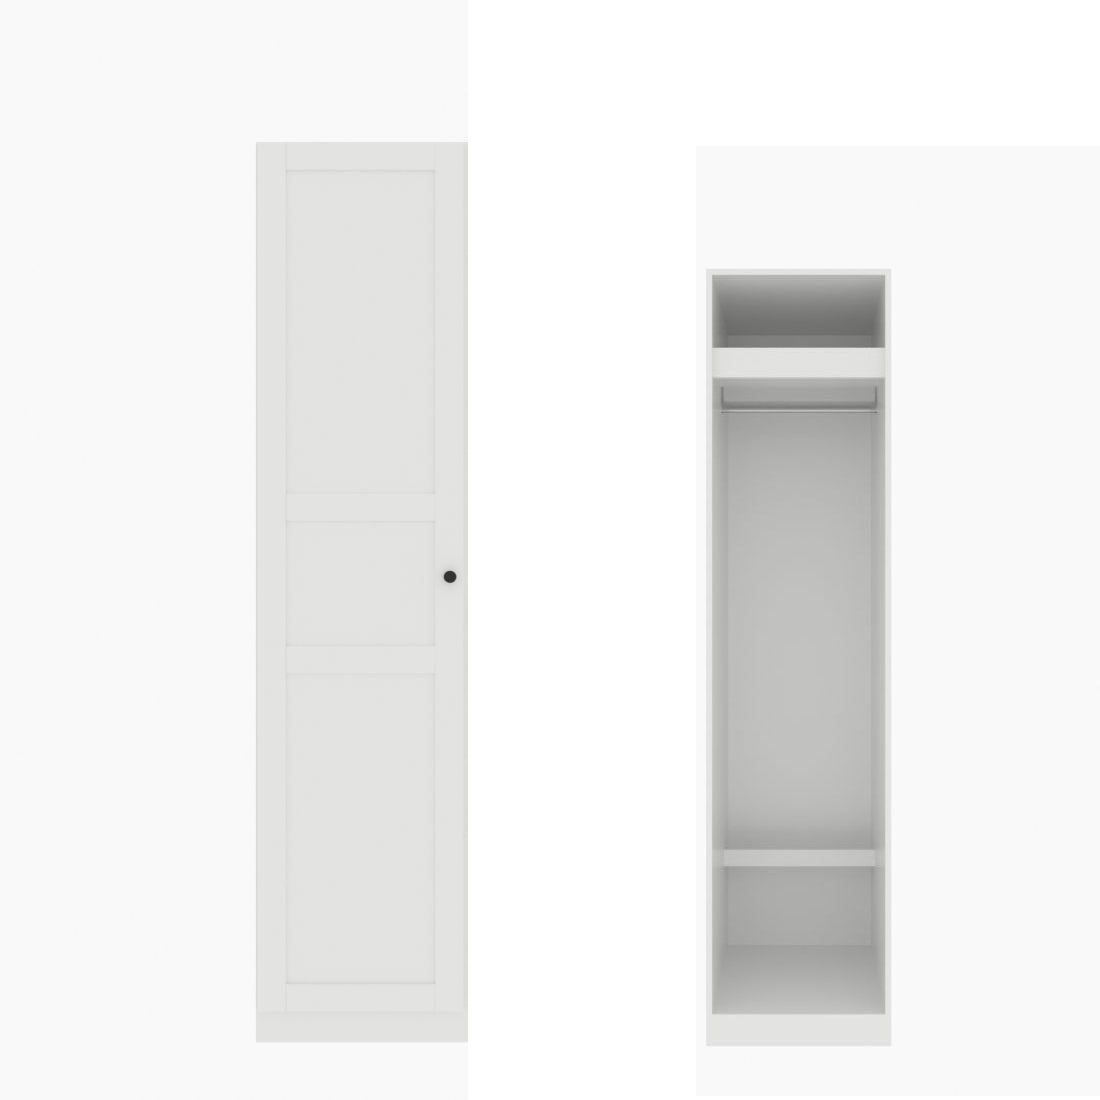 ตู้เสื้อผ้า ราวแขวนโล่ง OP-J (หน้าบานเปิดซ้าย) ขนาด 50 ซม. รุ่น Blox สีขาว01